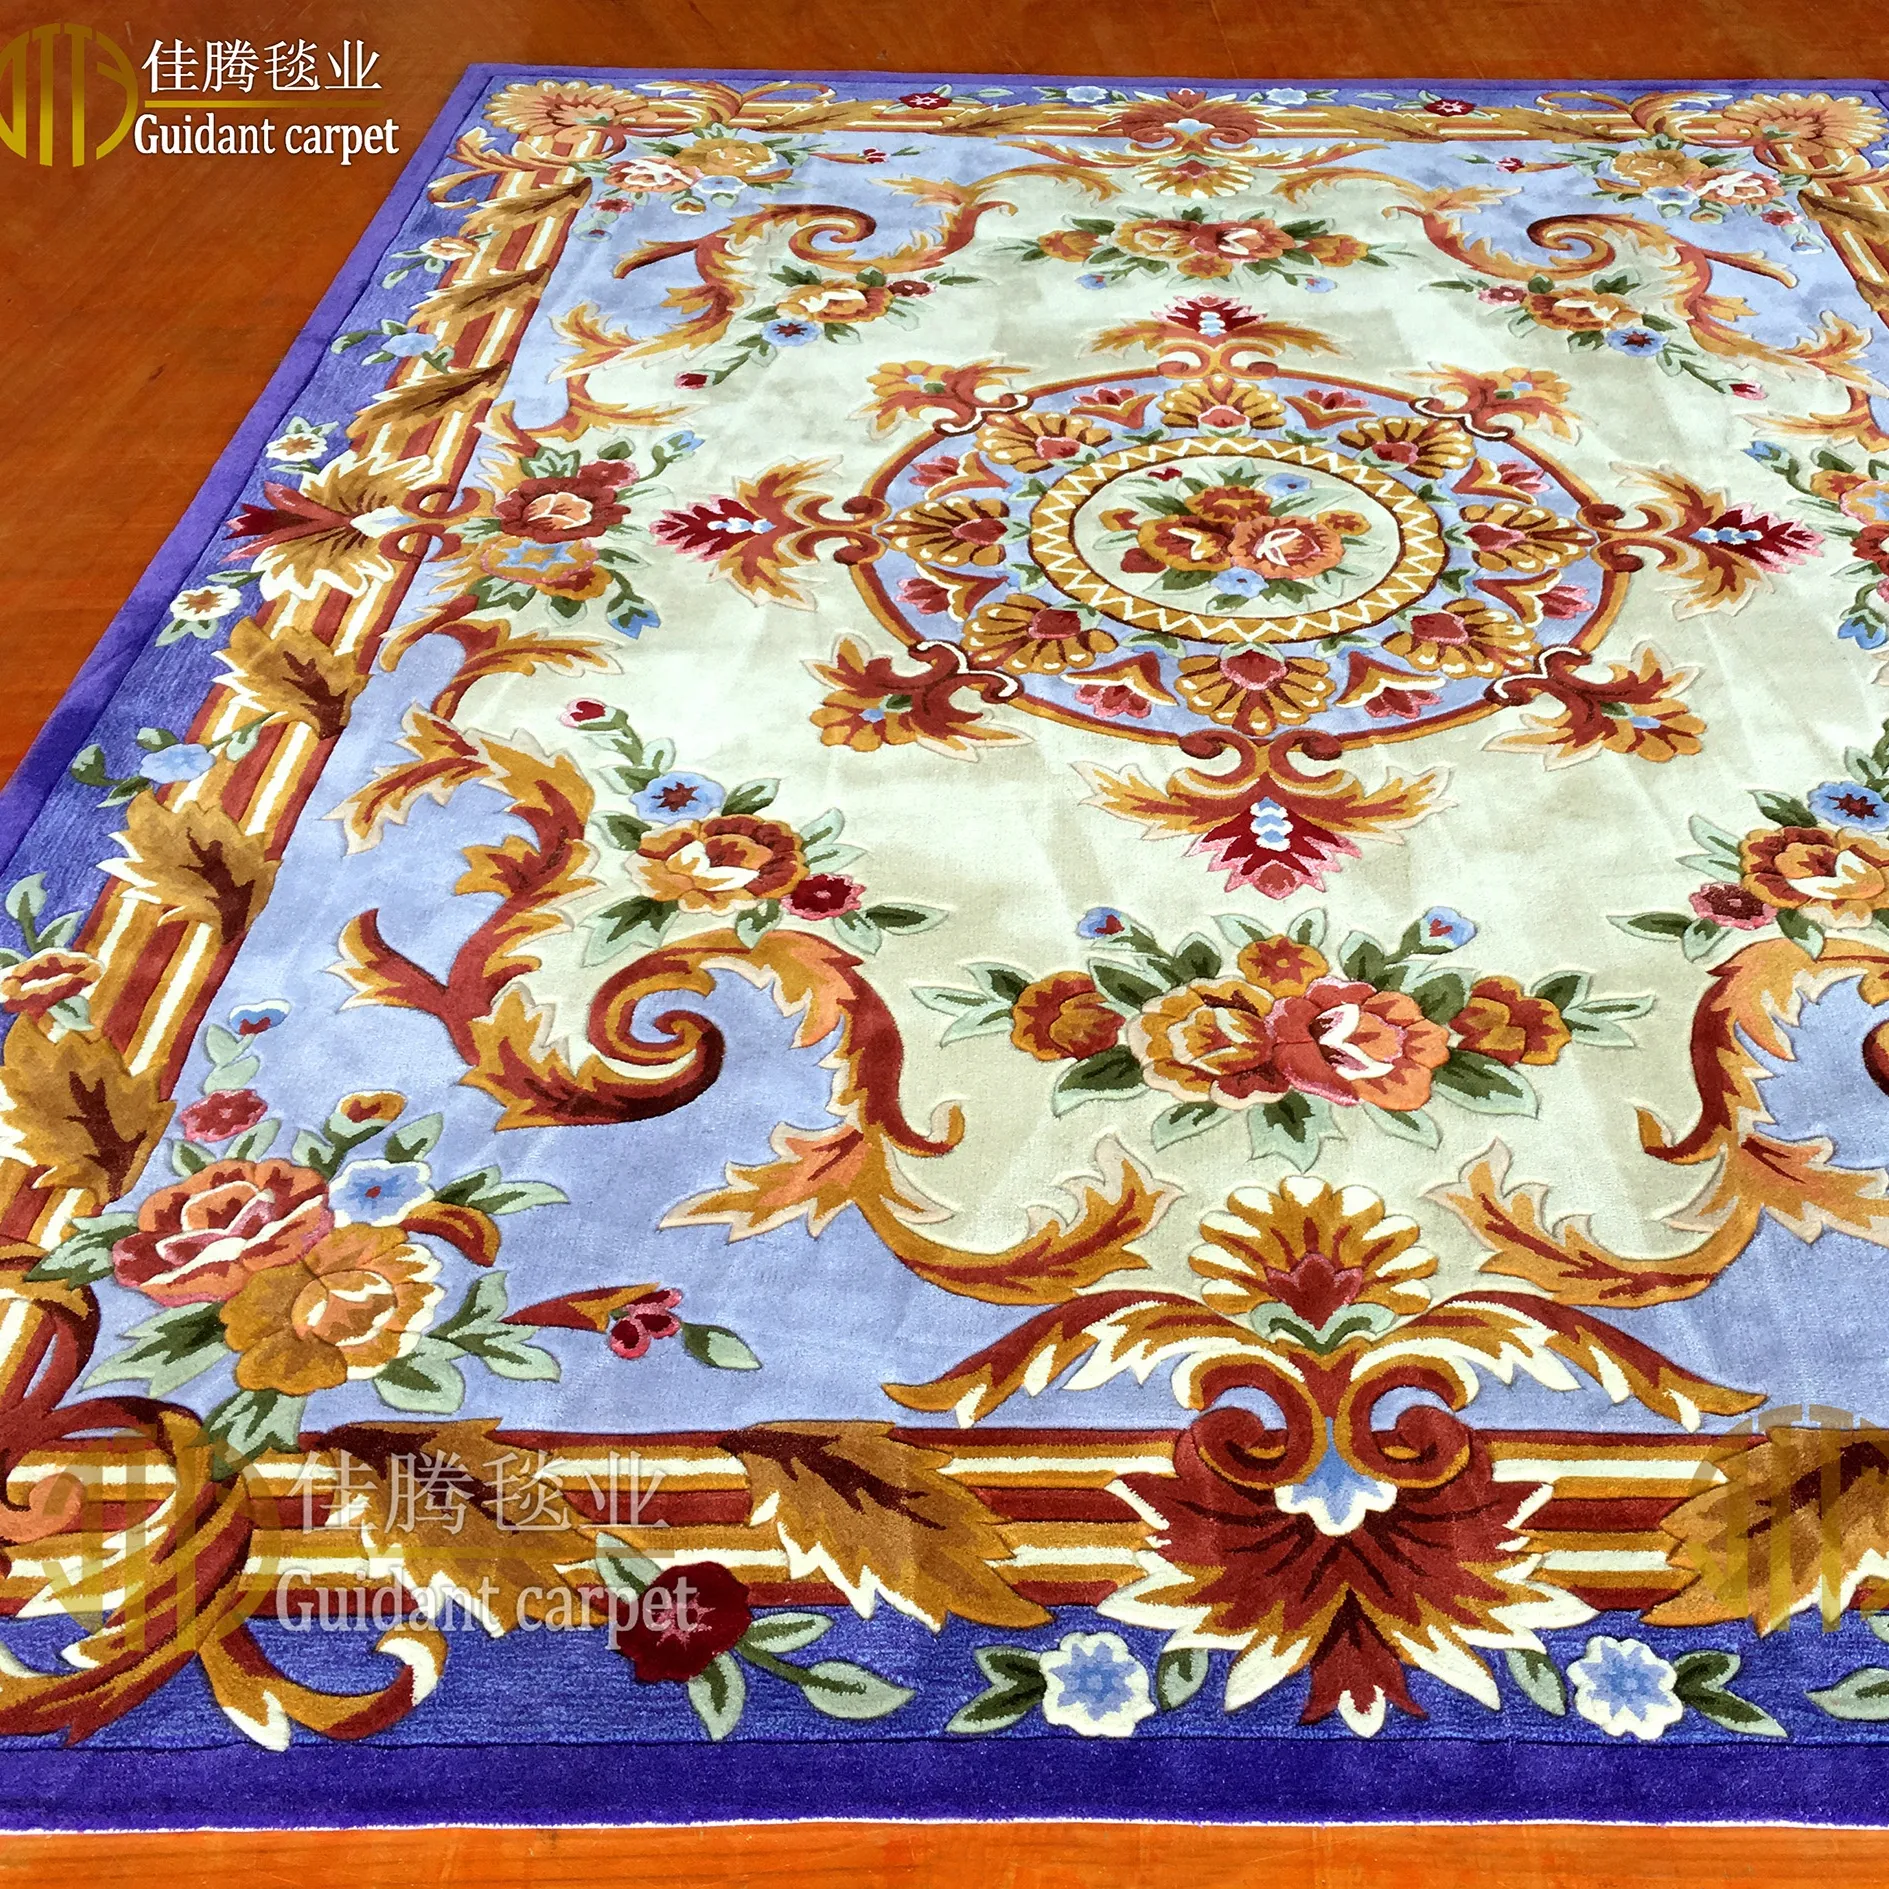 Fatto a mano trapuntata cinese tappeto di lana e soggiorno tappeto da guidant tappeto guangzhou fabbrica della porcellana